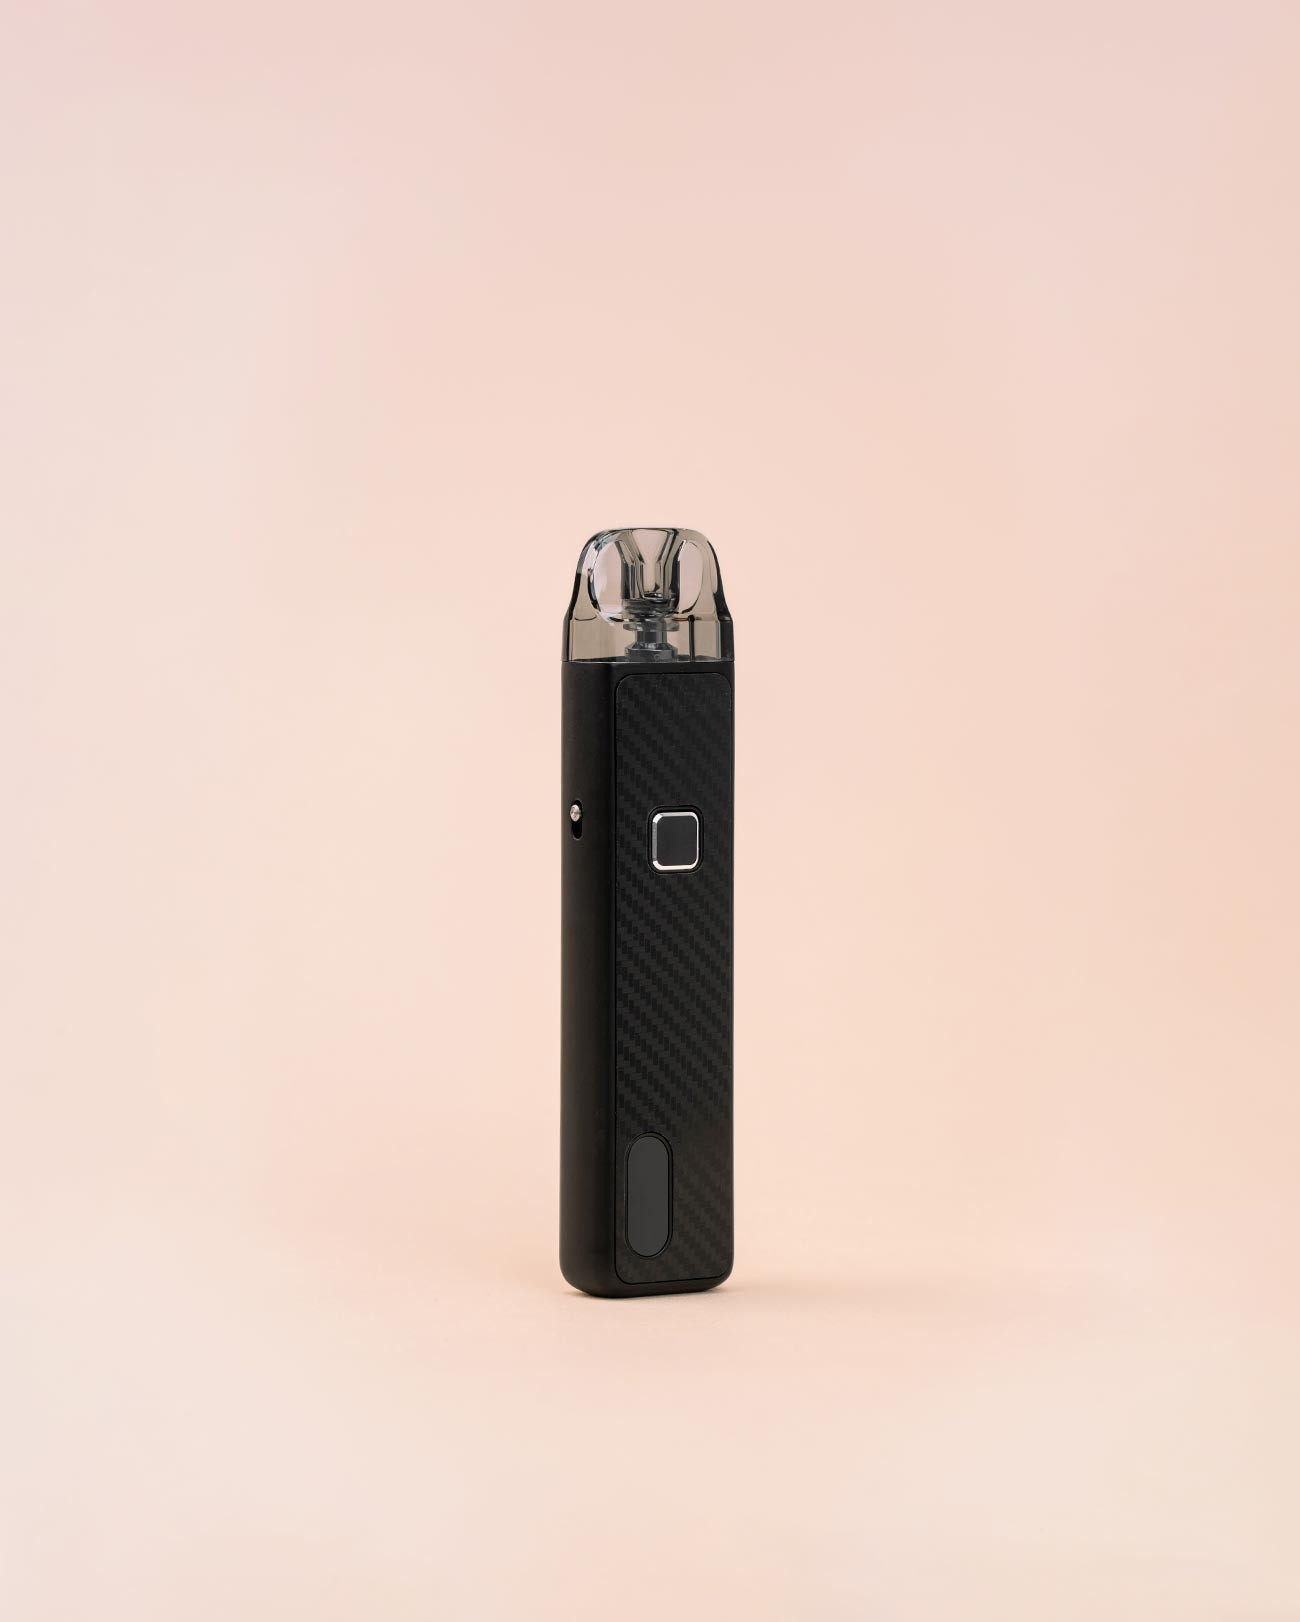 petite cigarette électronique Flexu Pro Aspire black